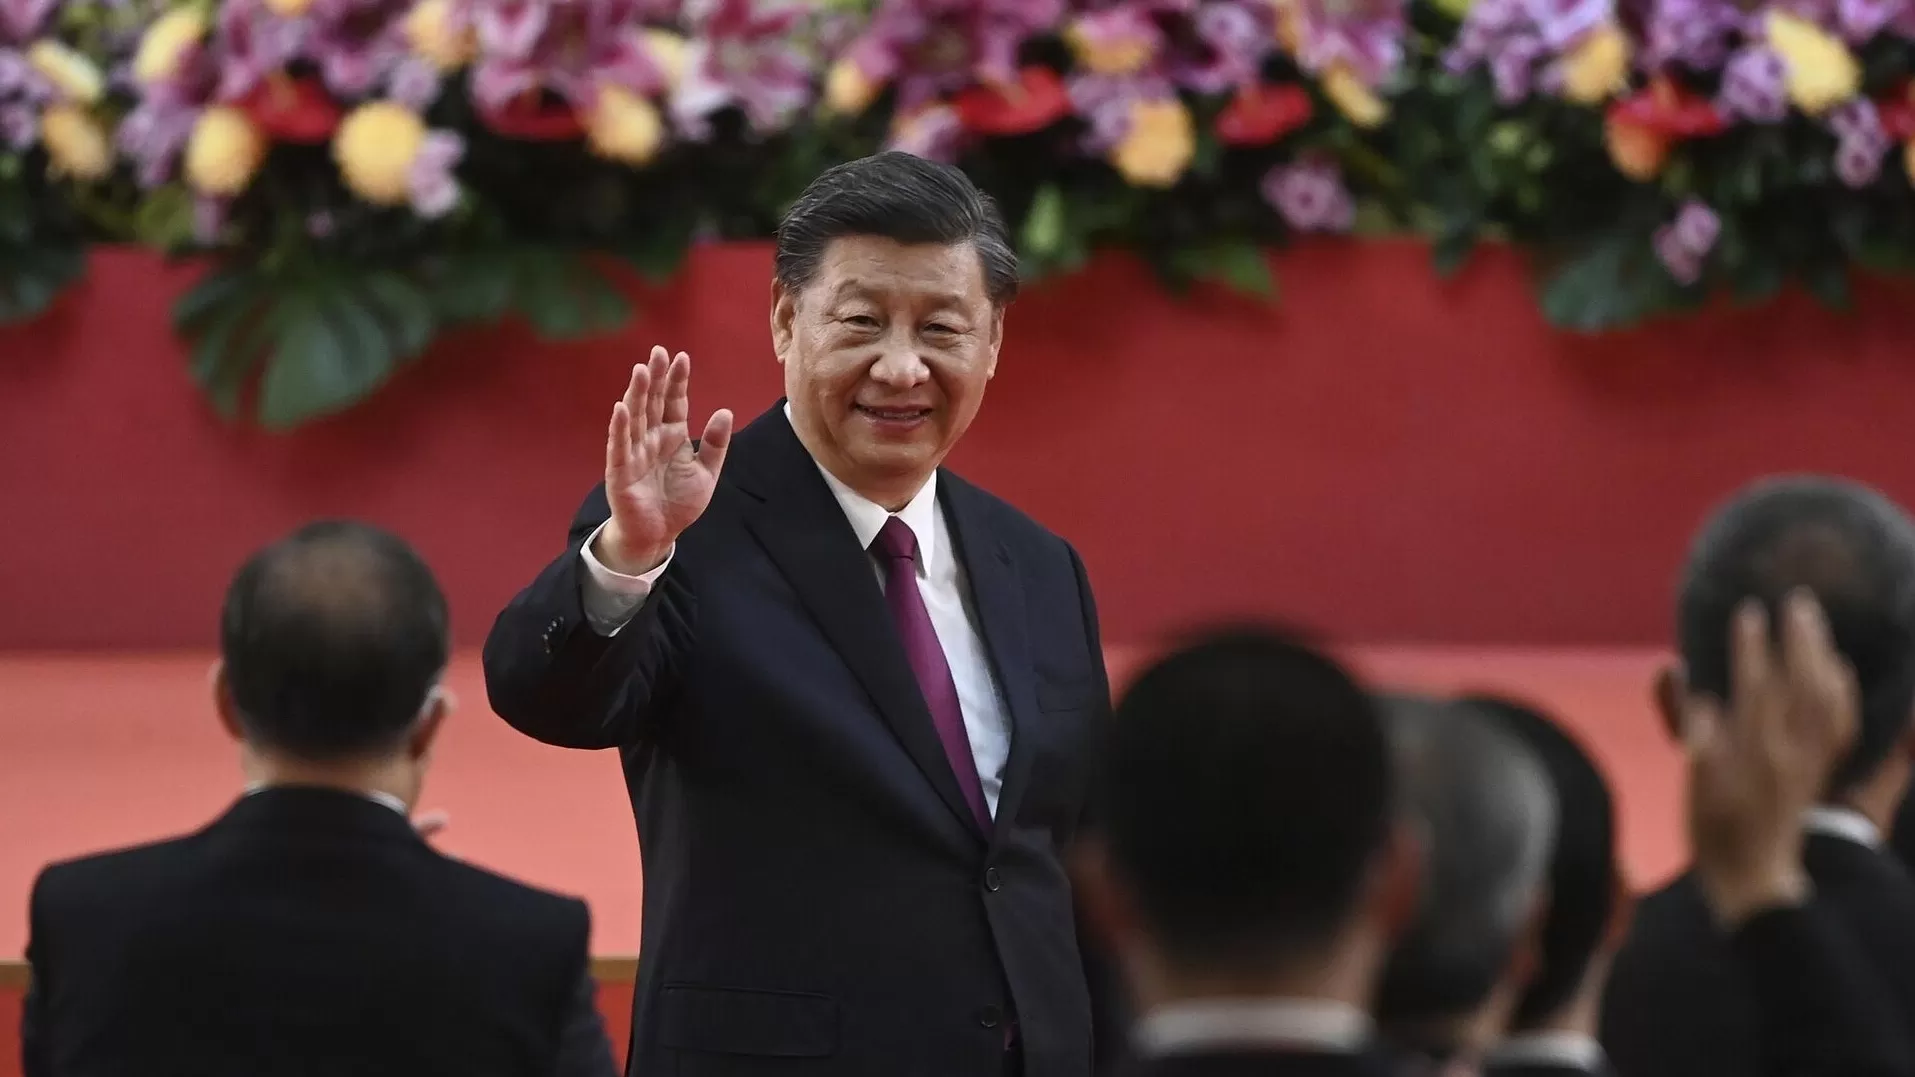 Սի Ծինփինը վերընտրվել է Չինաստանի նախագահի պաշտոնում